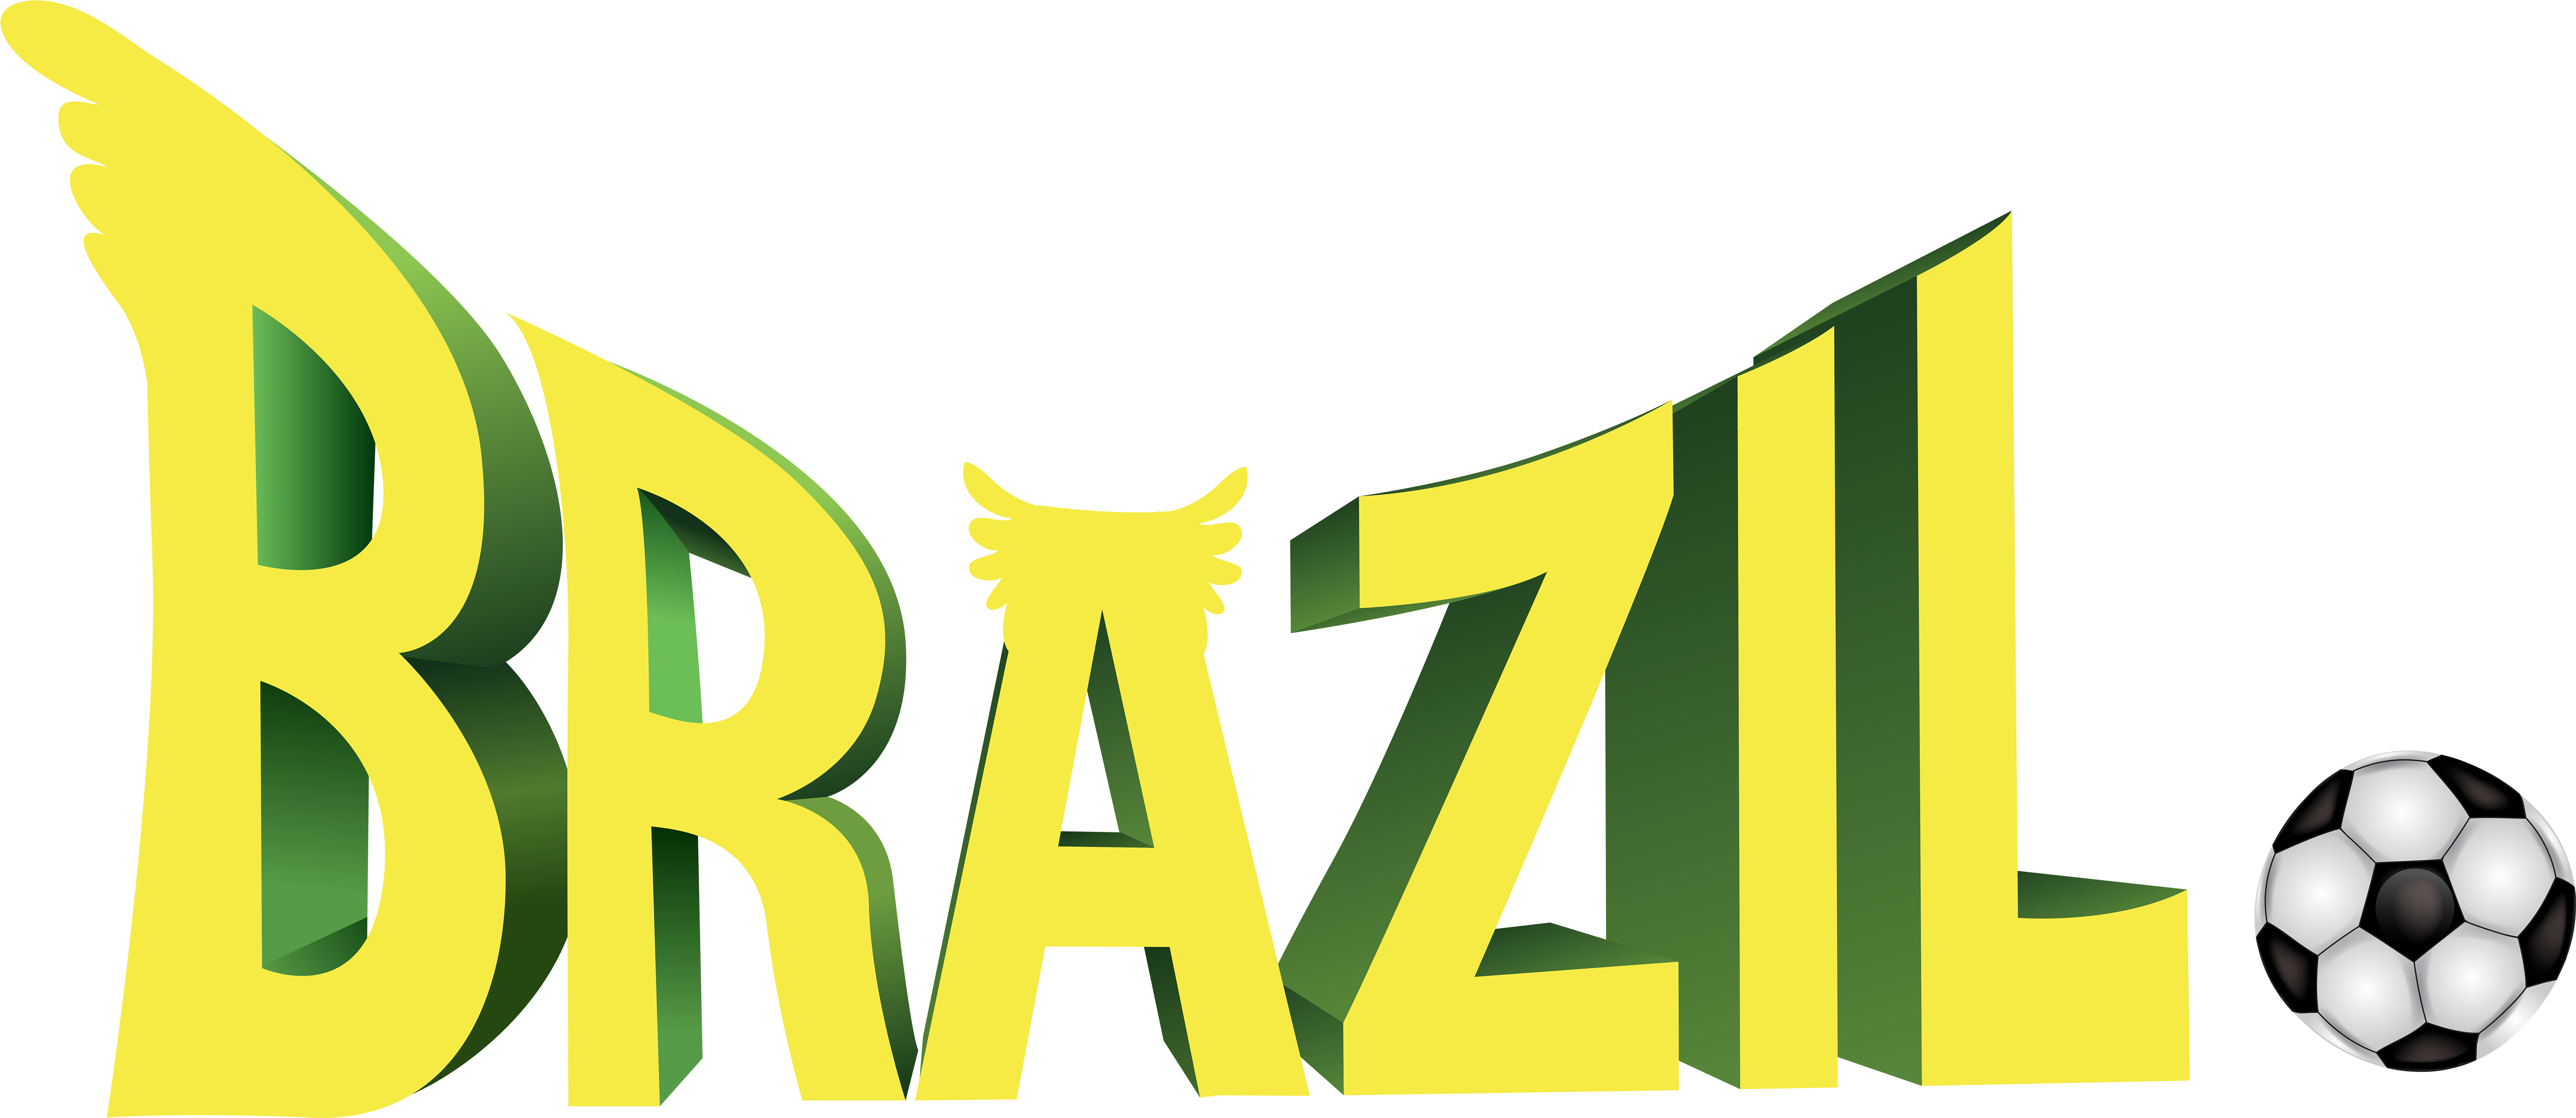 Brazil National Football Team 2014 Fifa World Cup Ball - Brazil Football Logo Png (7000x3070)